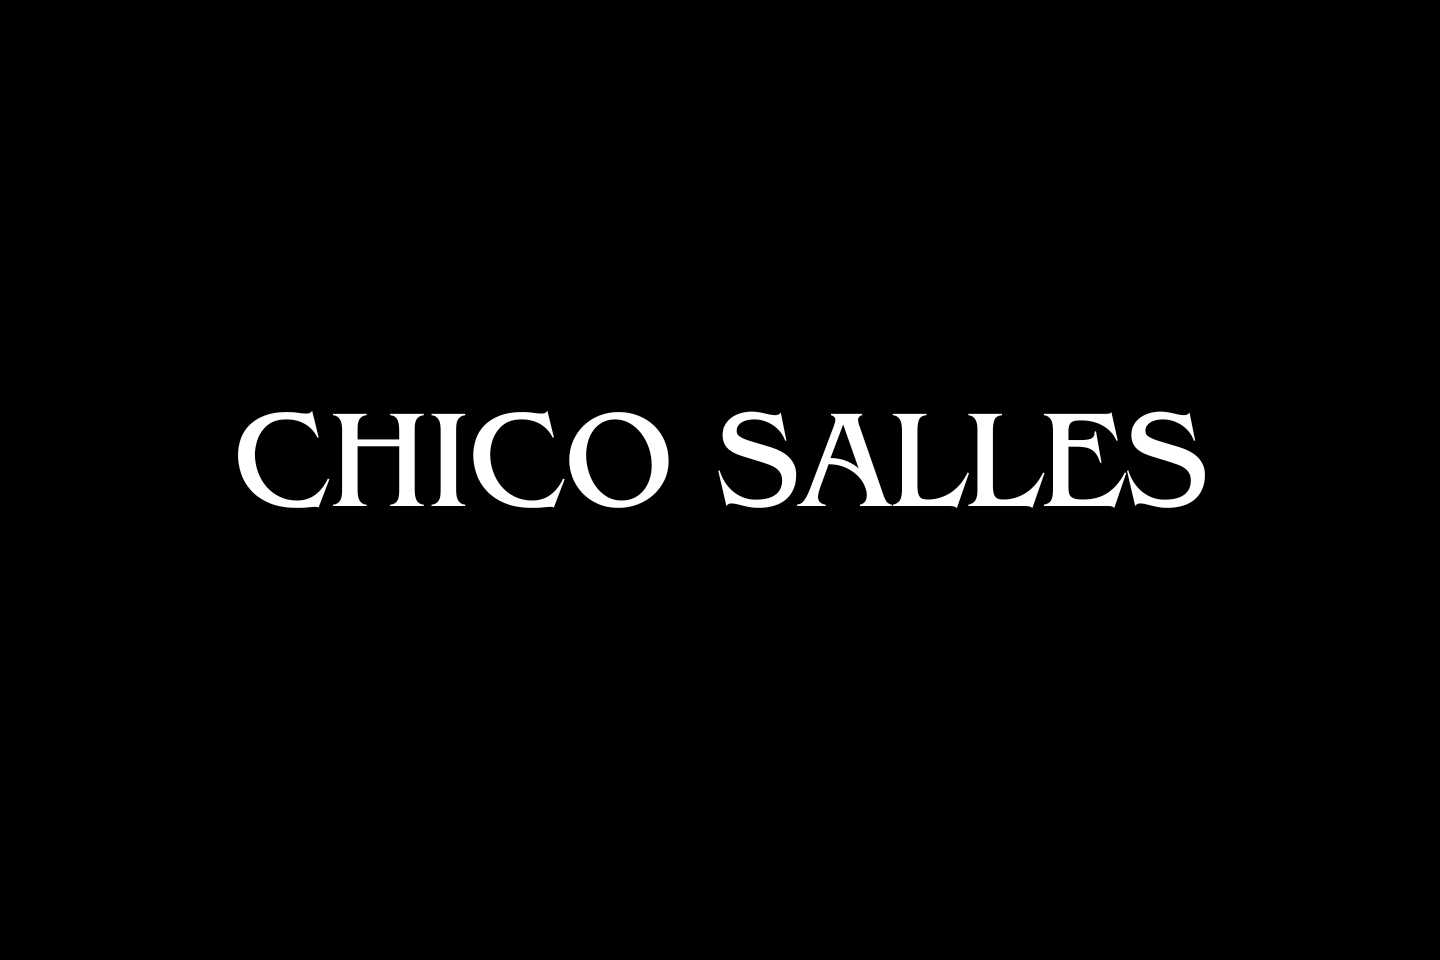 Chico Salles